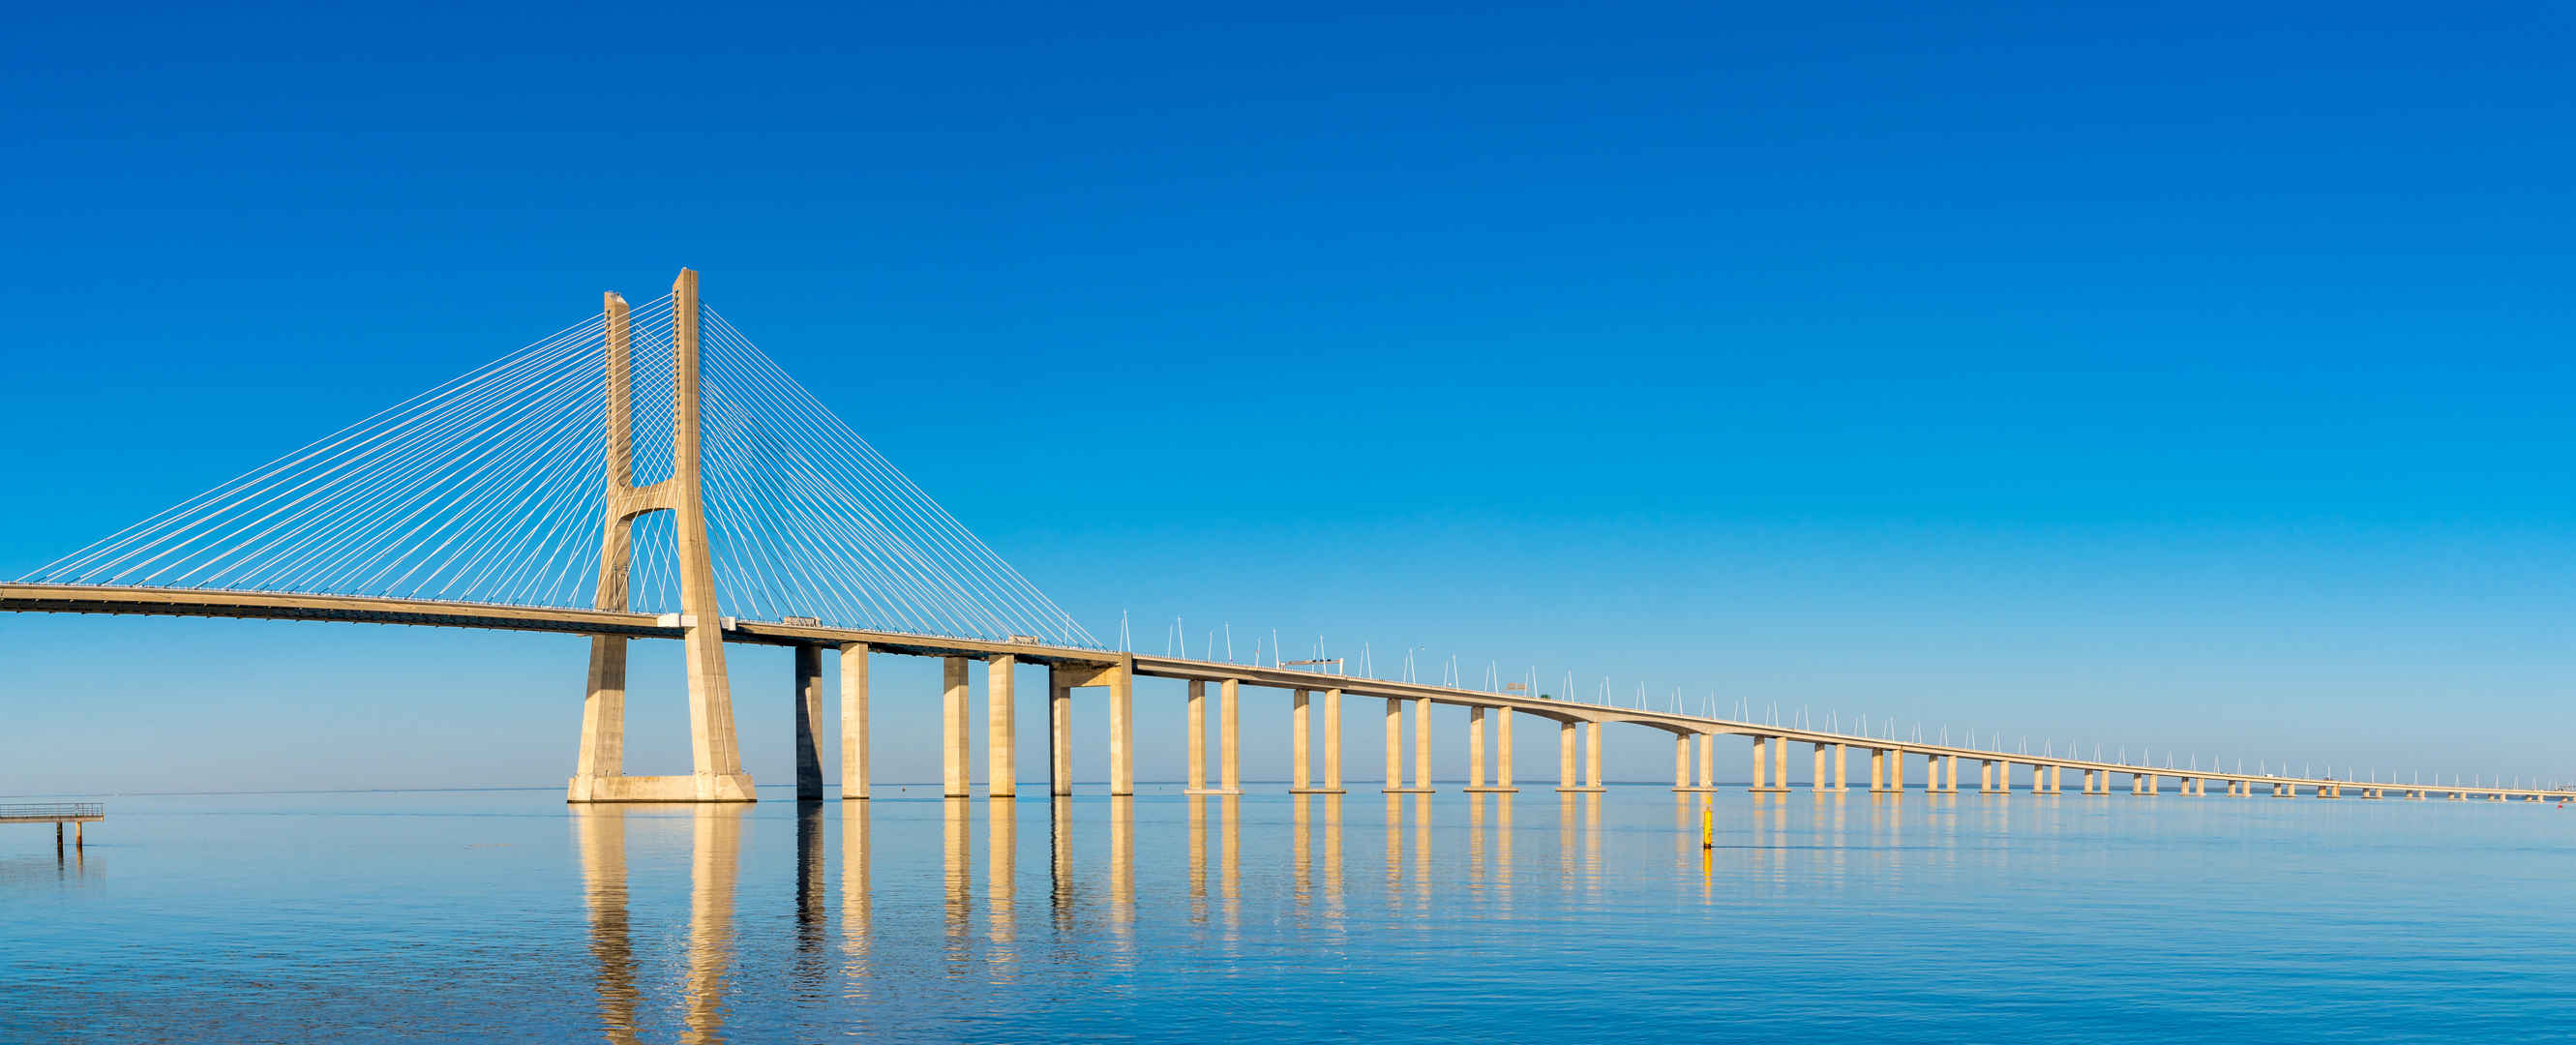 欧洲最长的桥高清壁纸-